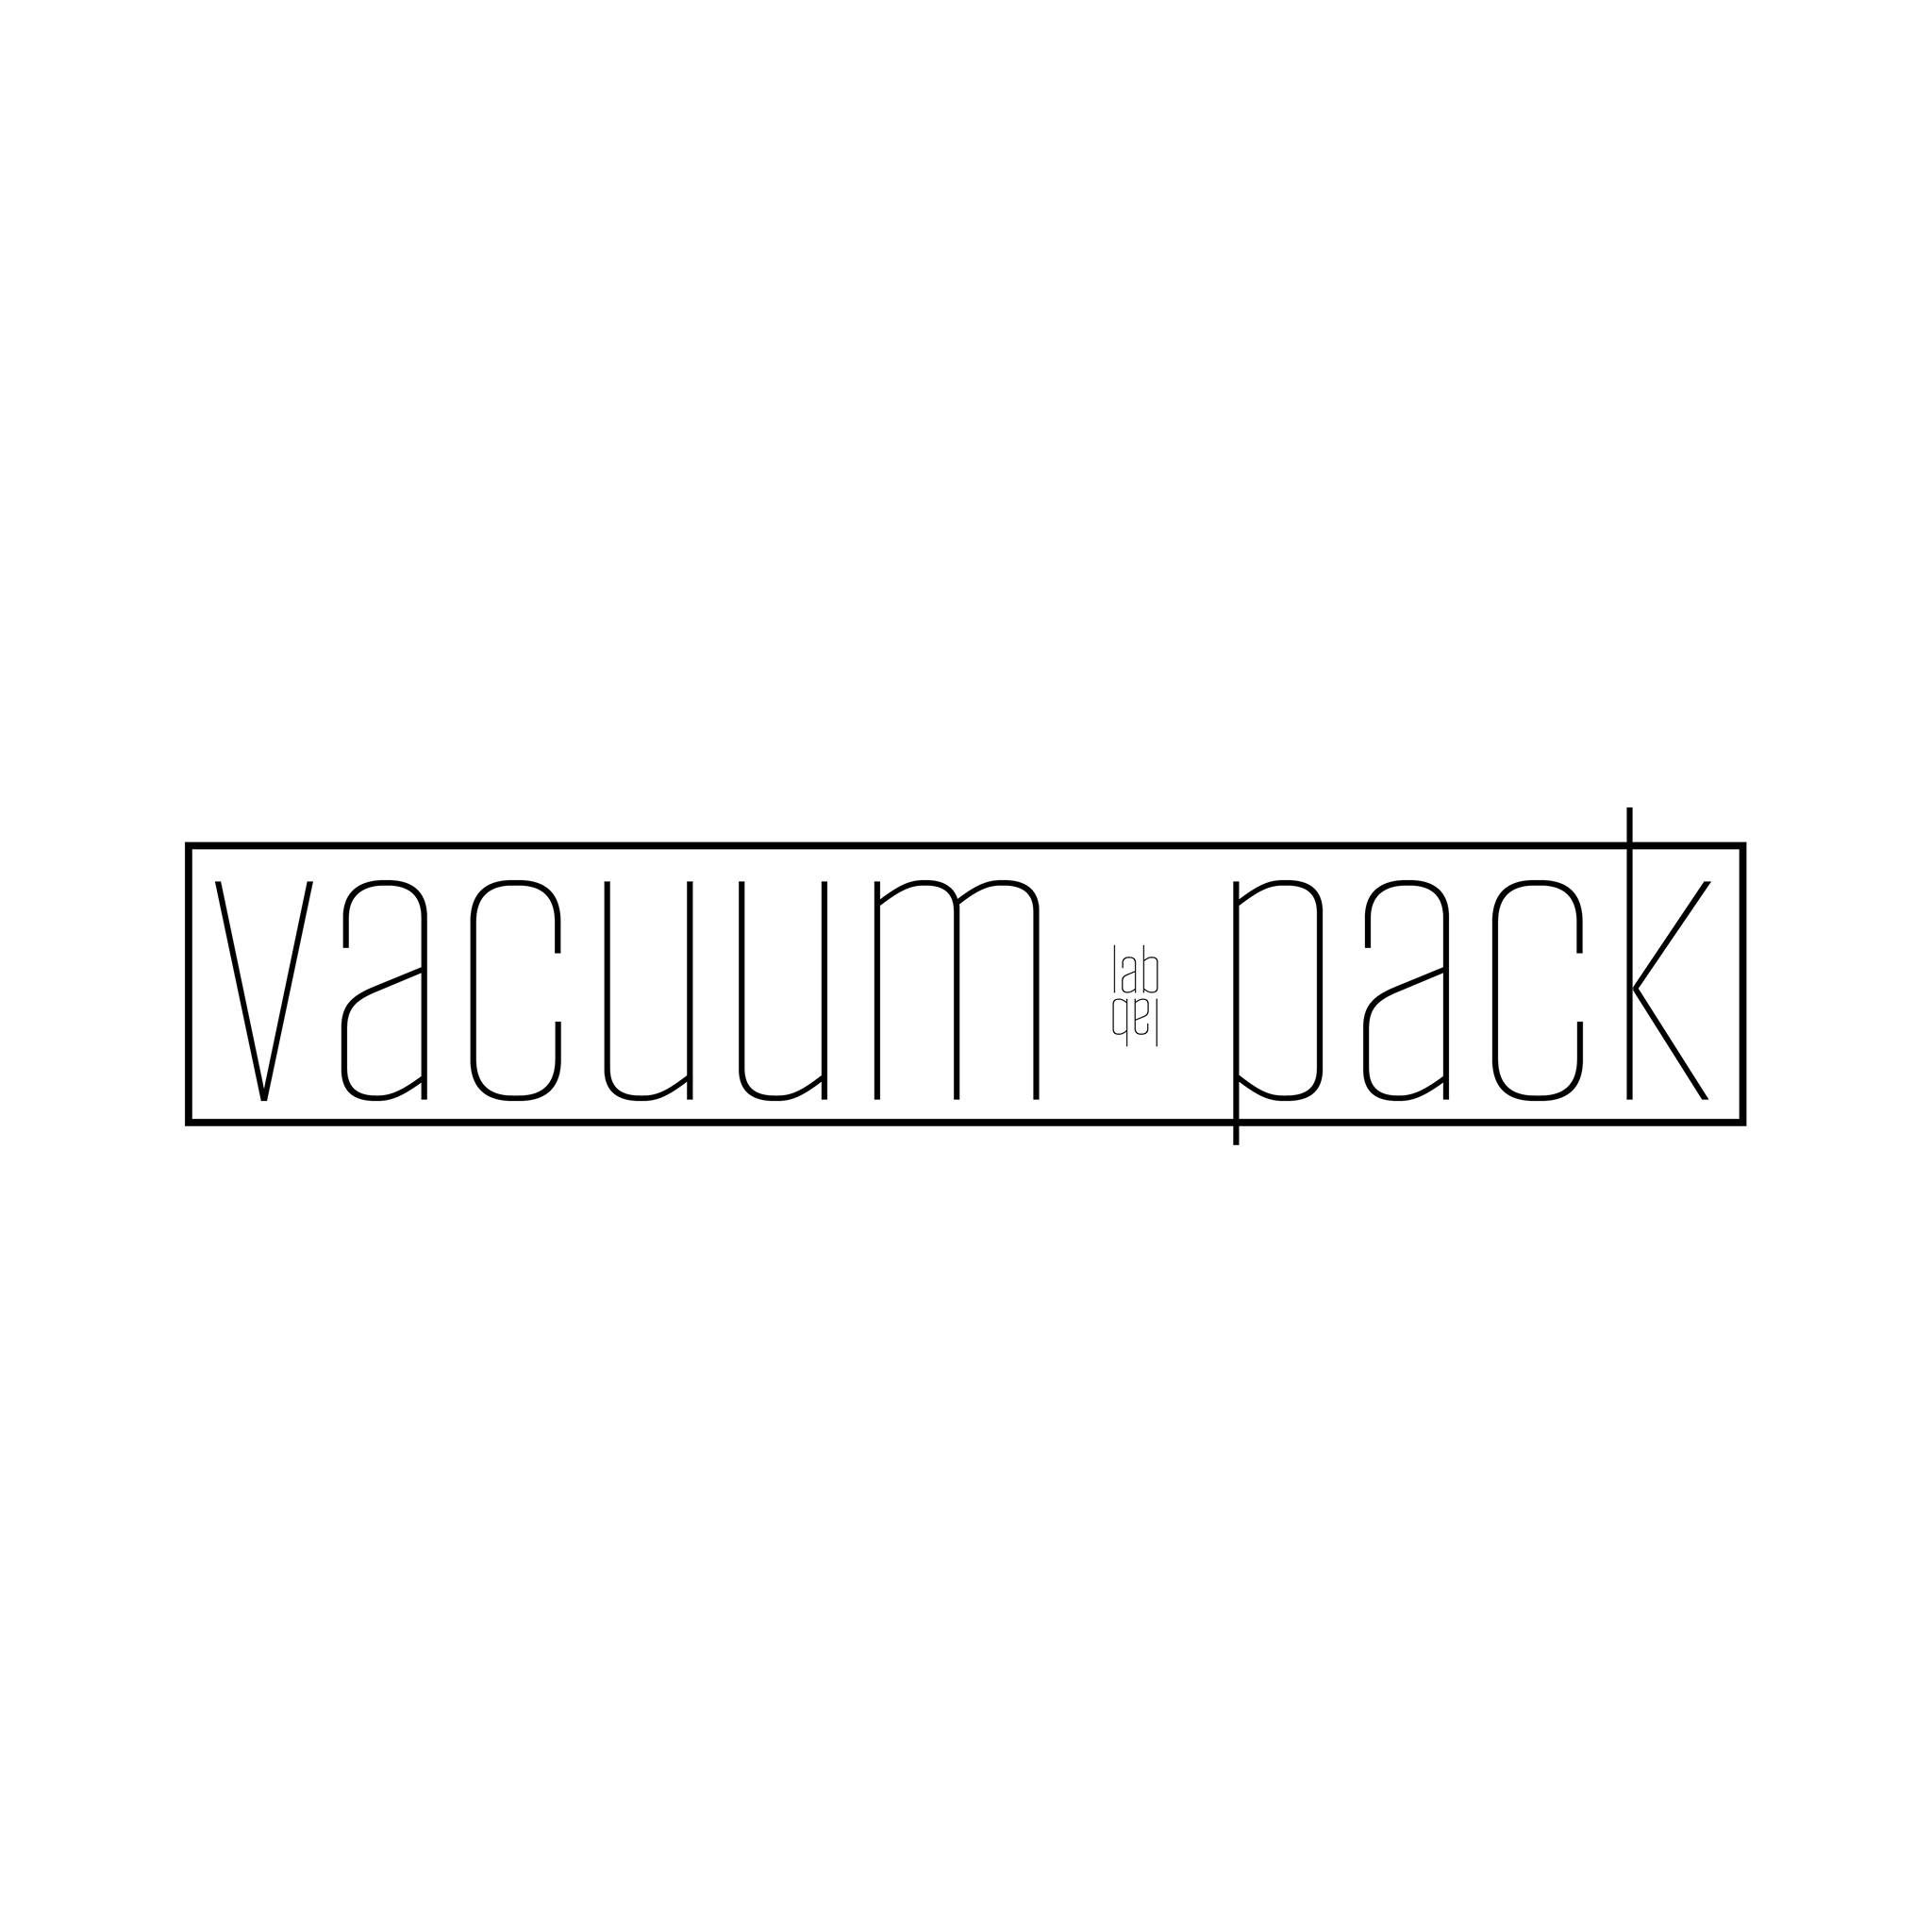 Vacuum Pack